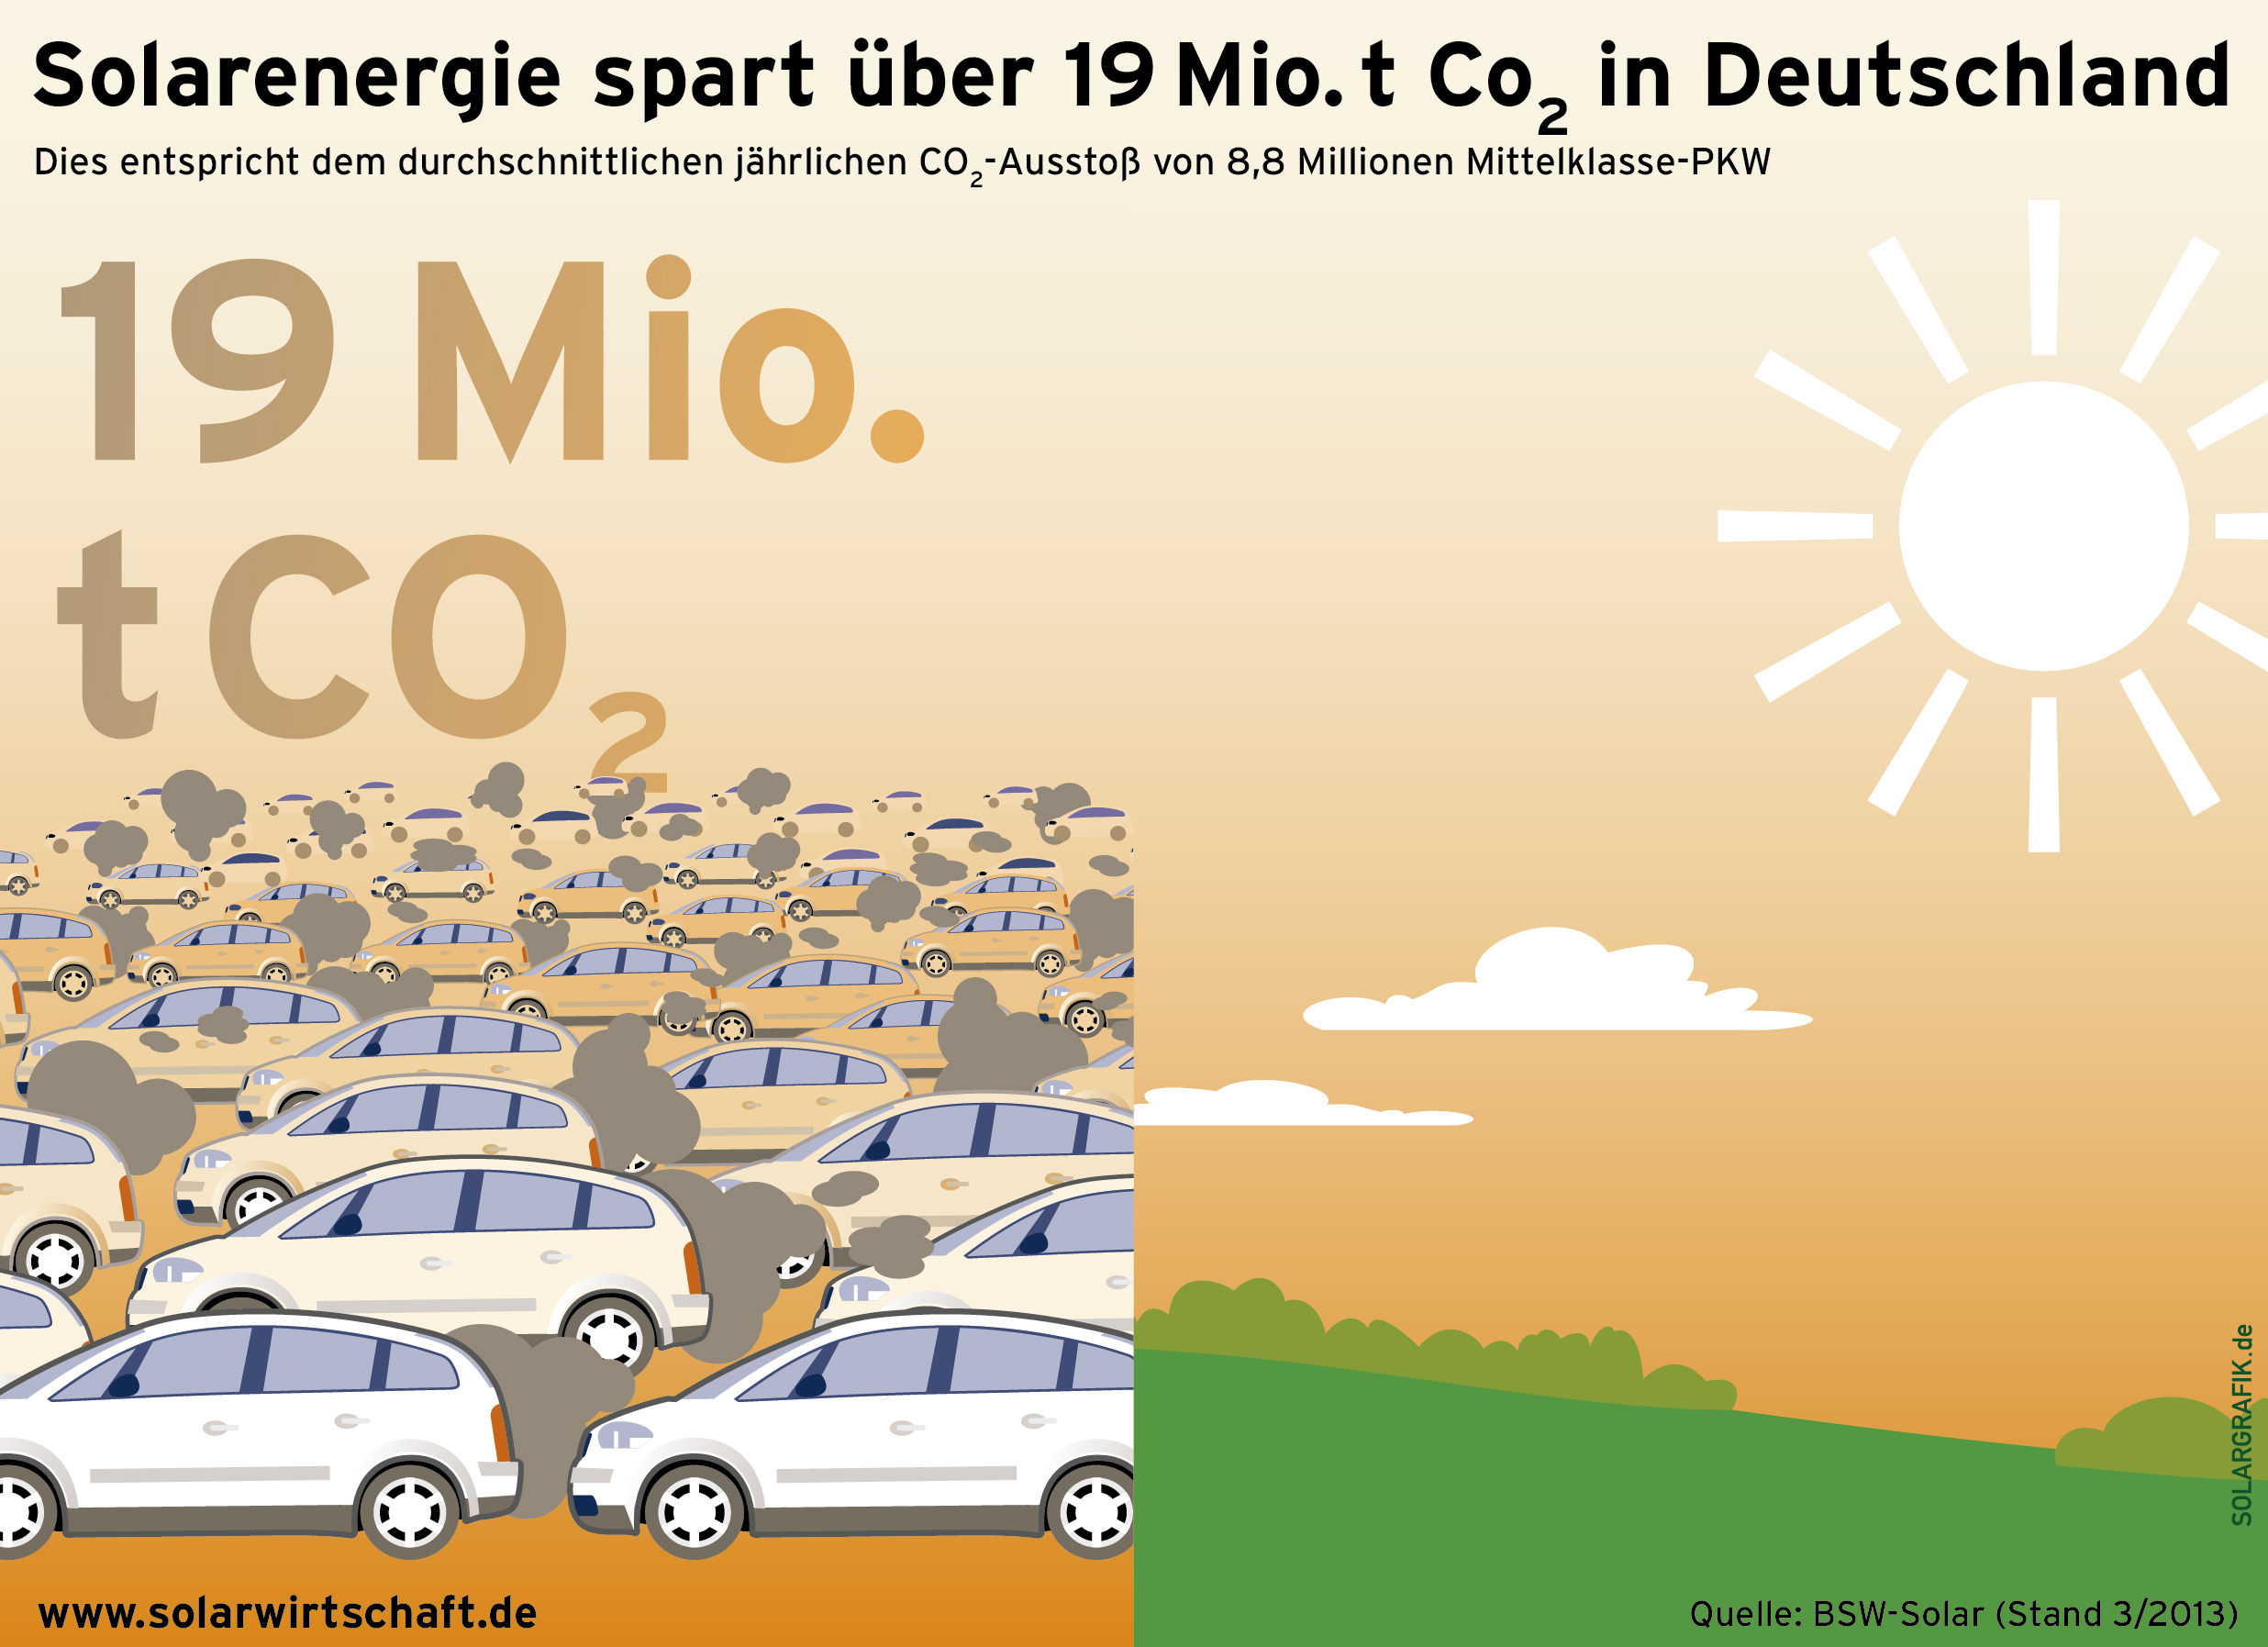 19 Mi. CO2 durch Solarenergie eingespart